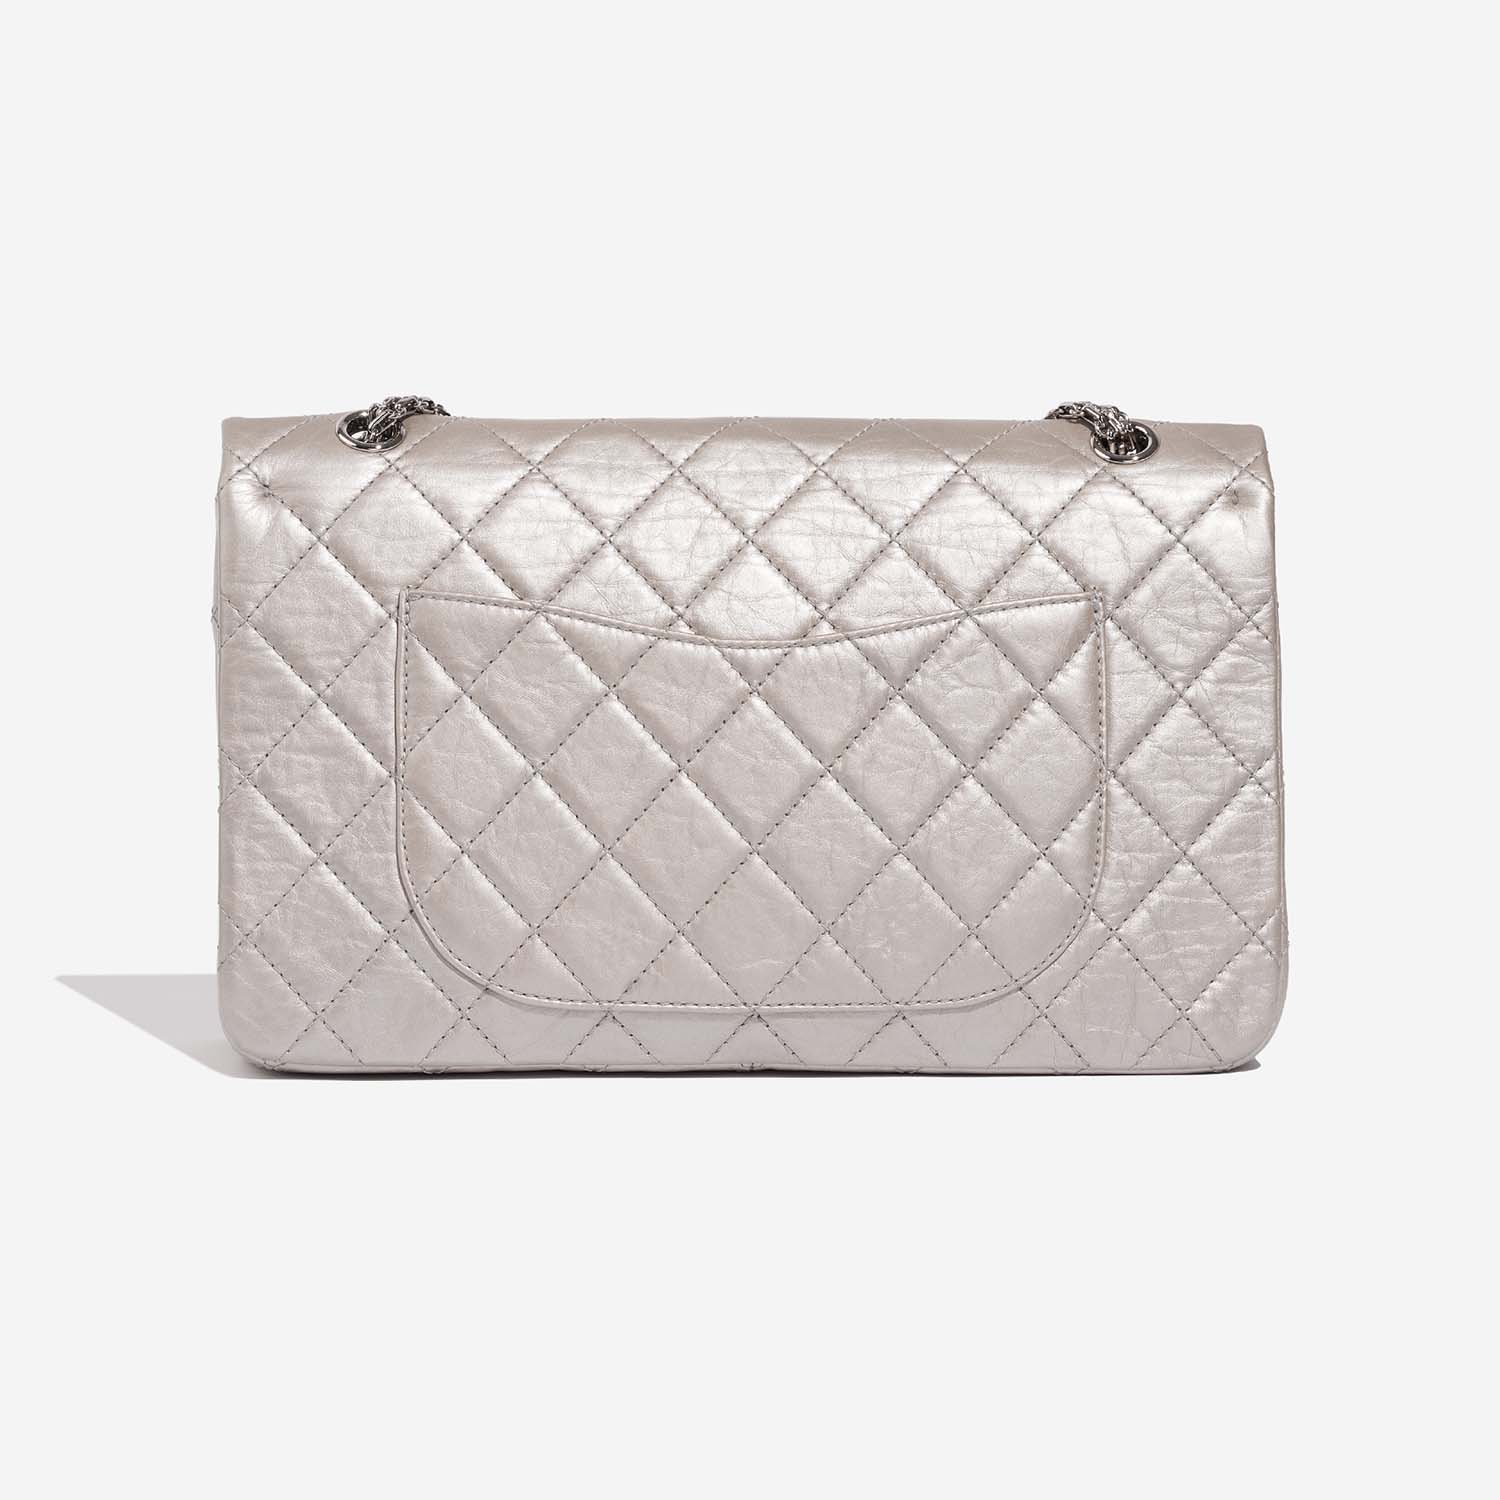 Chanel 255Reissue 227 Silver Back | Verkaufen Sie Ihre Designer-Tasche auf Saclab.com